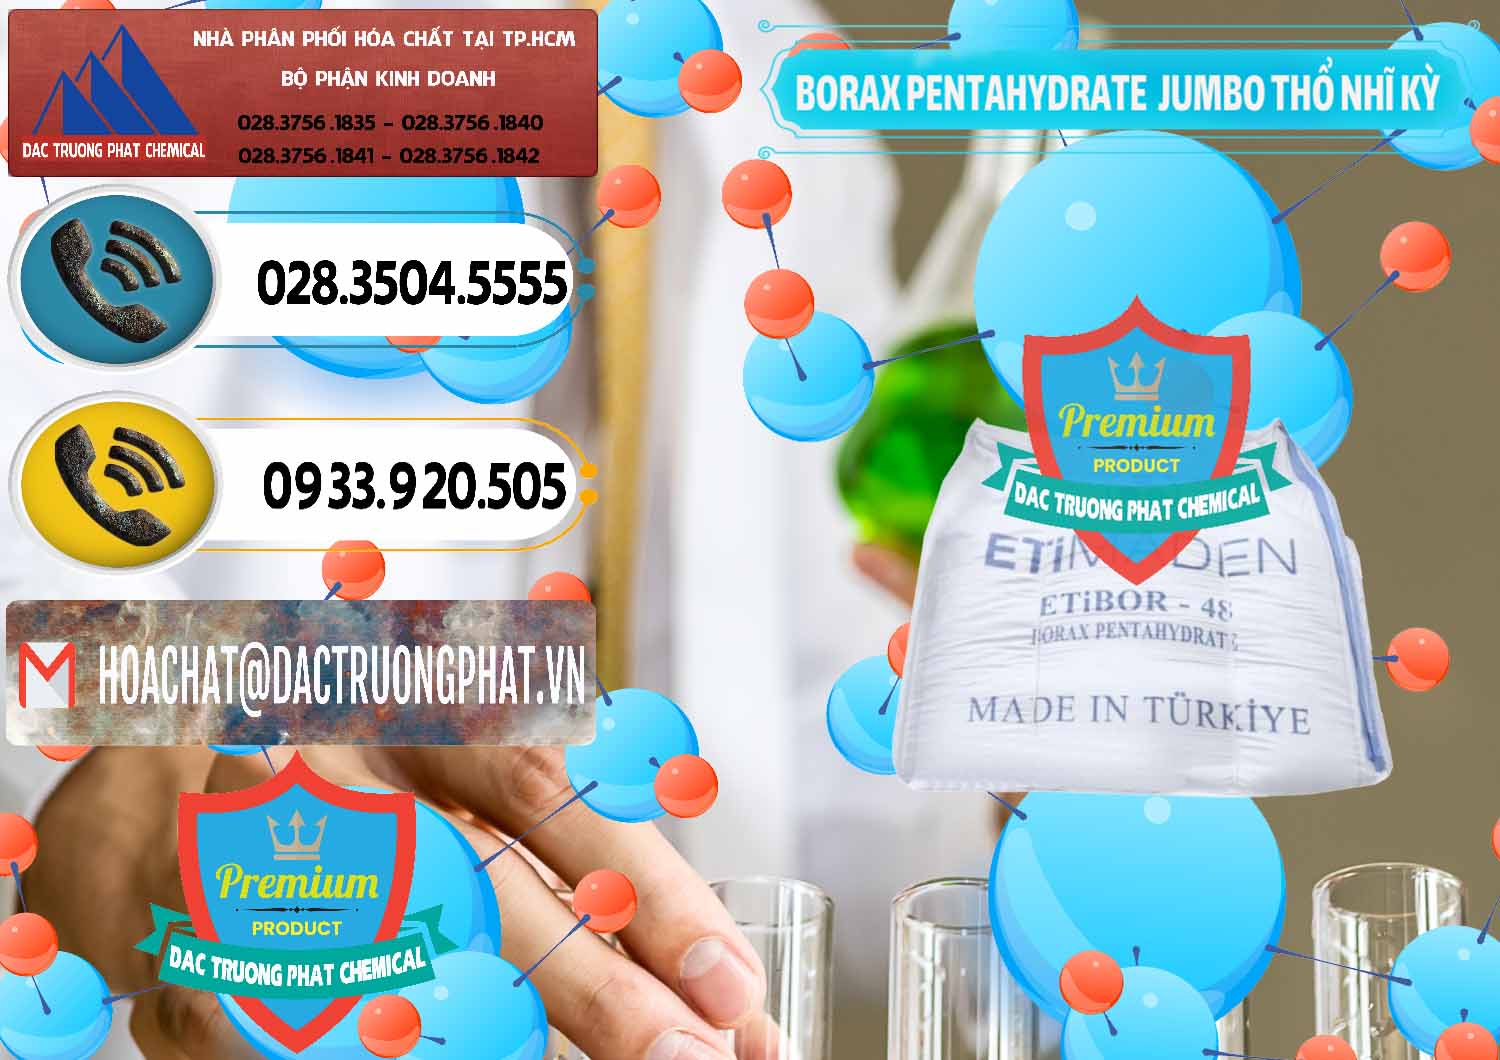 Nơi bán - cung cấp Borax Pentahydrate Bao Jumbo ( Bành ) Thổ Nhĩ Kỳ Turkey - 0424 - Nơi chuyên kinh doanh và phân phối hóa chất tại TP.HCM - hoachatdetnhuom.vn